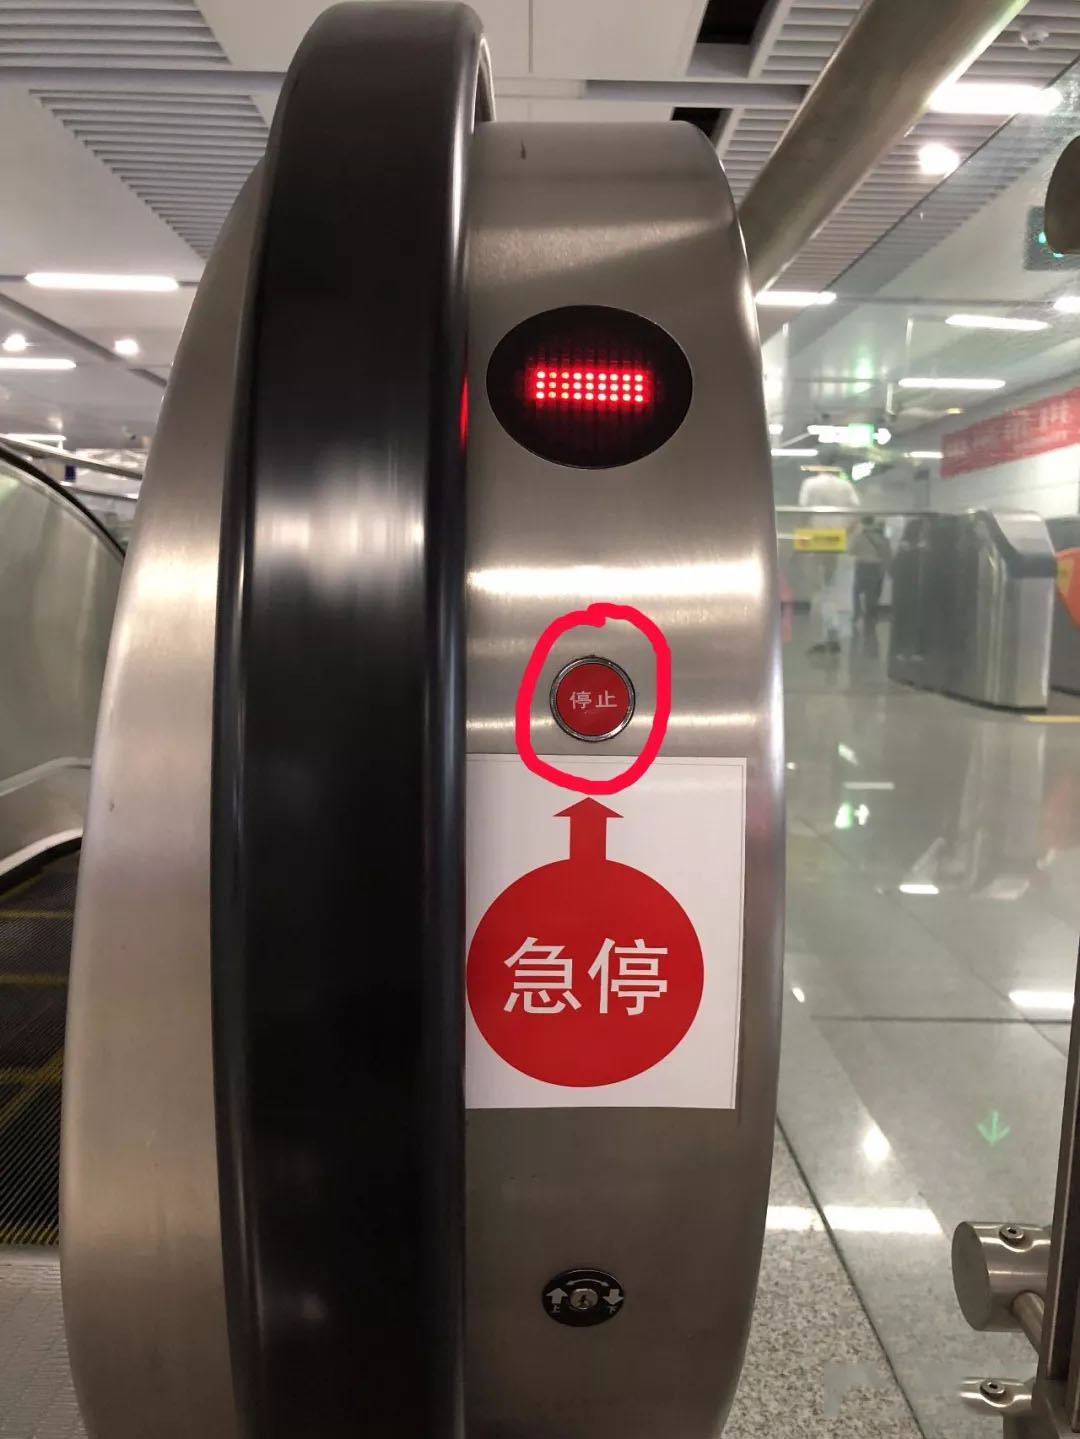 湖南電梯公司:自動扶急停按鈕